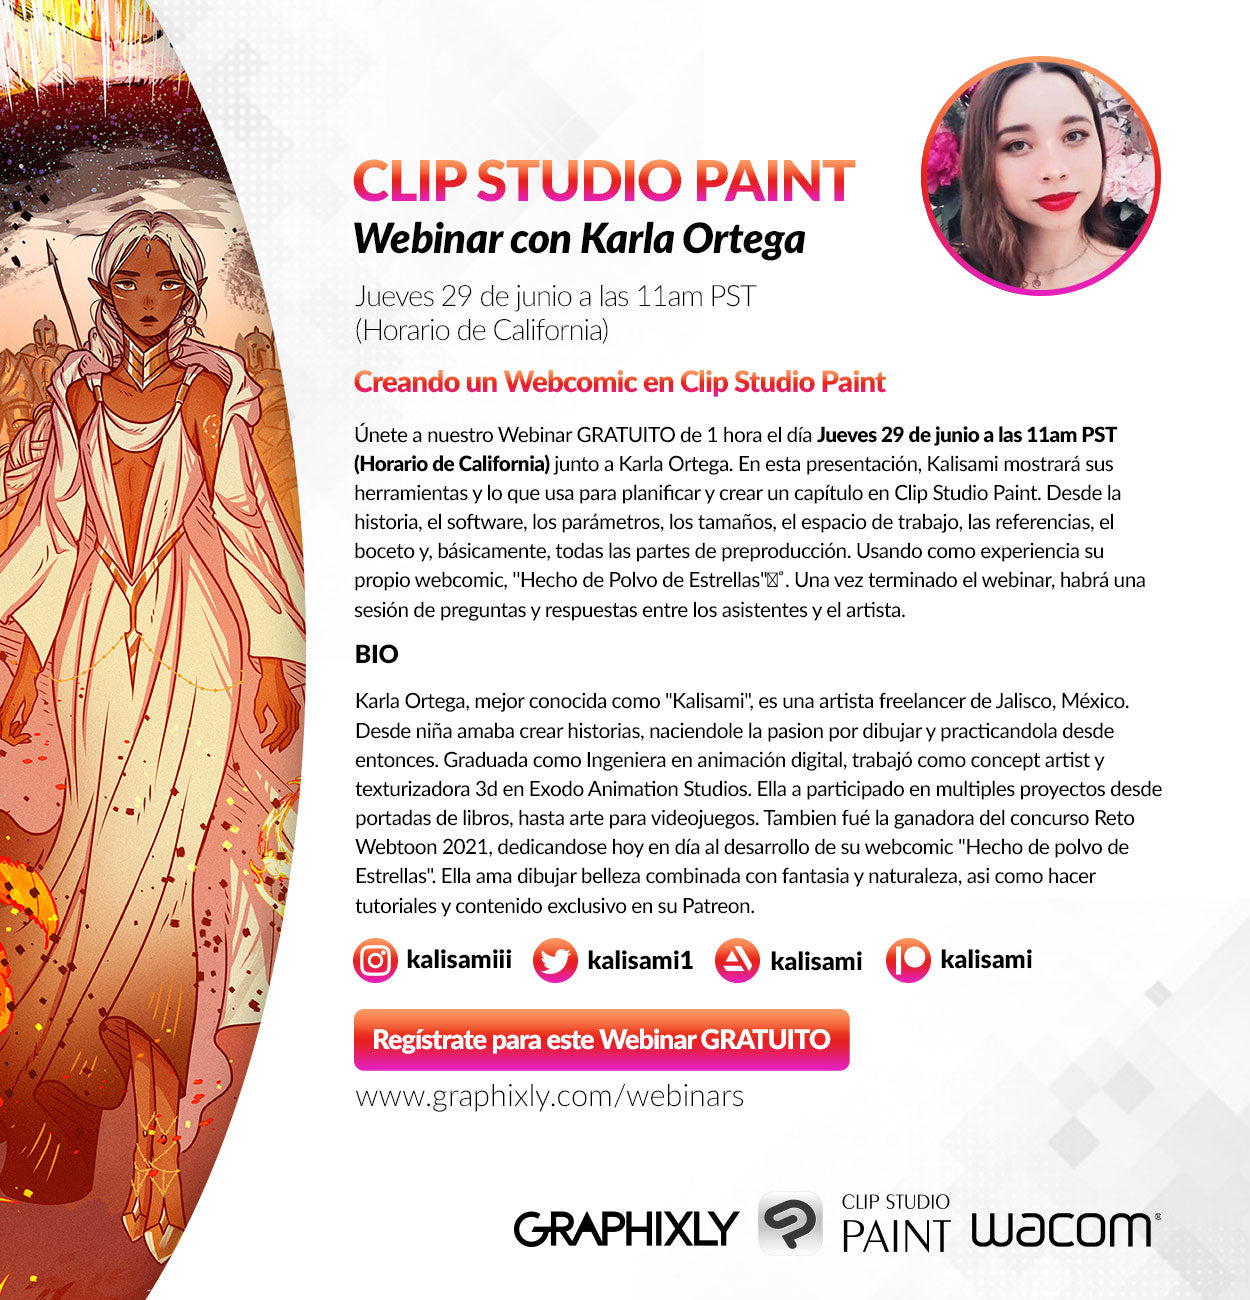 Webinar en español - Creando un Webcomic en Clip Studio Paint con Karla Ortega